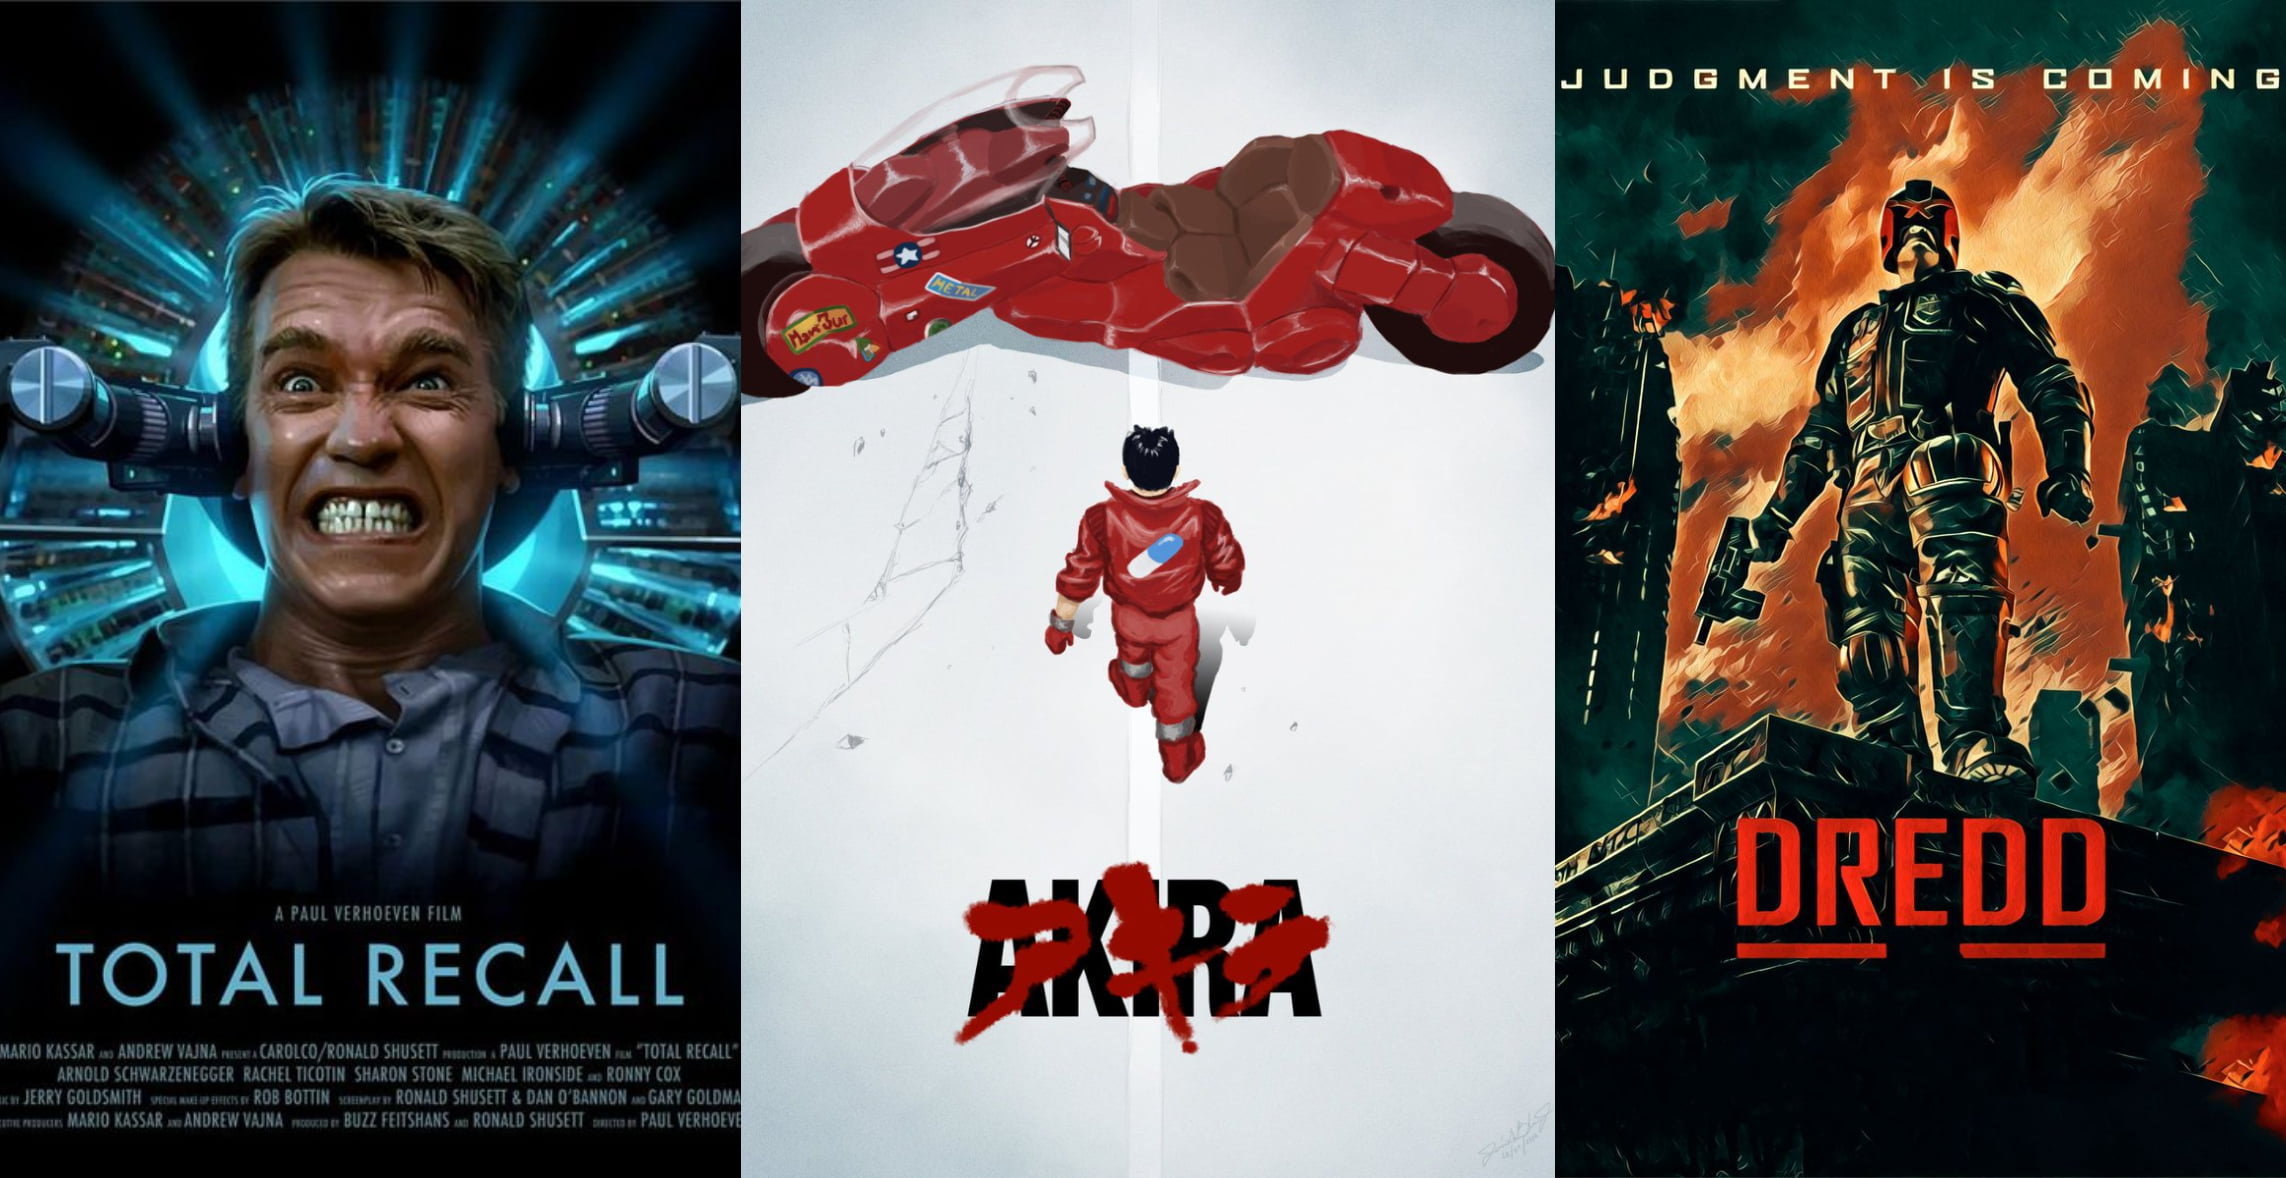 ESPECIAL:15 mejores películas de cyberpunk y ciencia ficción